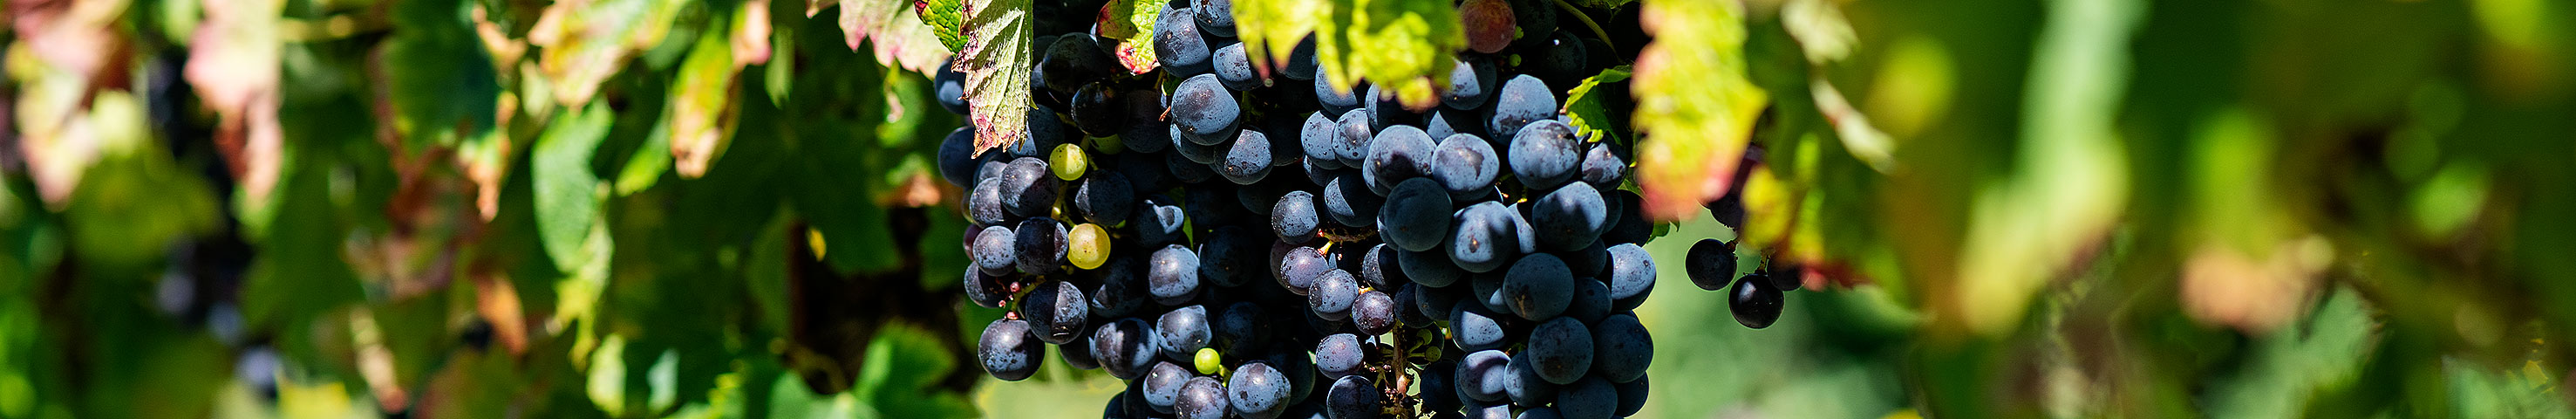 Vin|Wein|Wine